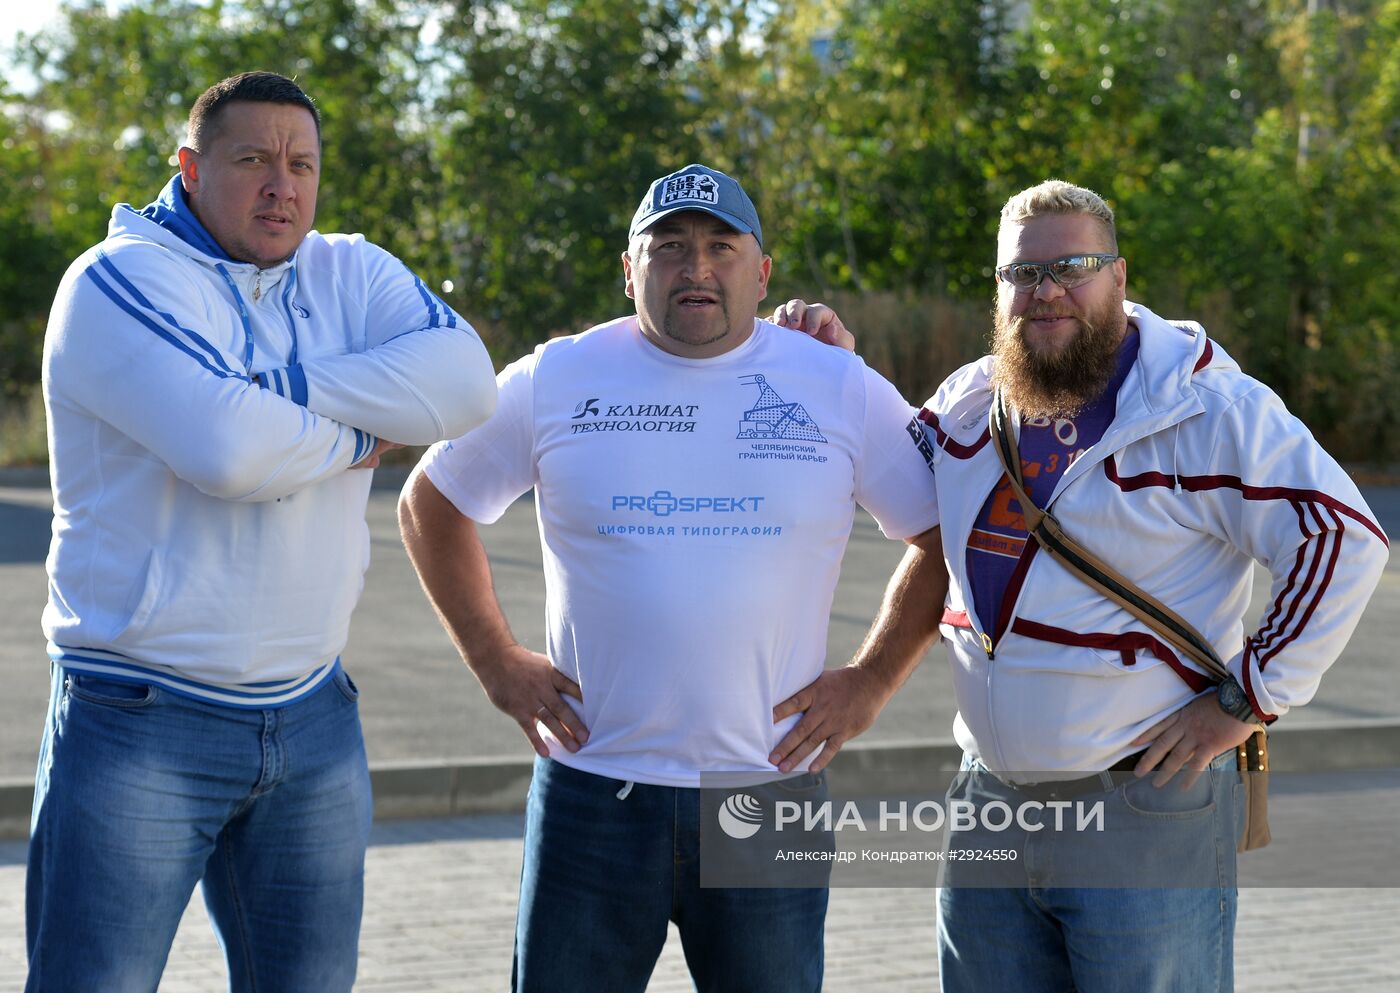 Челябинский силач Эльбрус Нигматуллин установил мировой рекорд